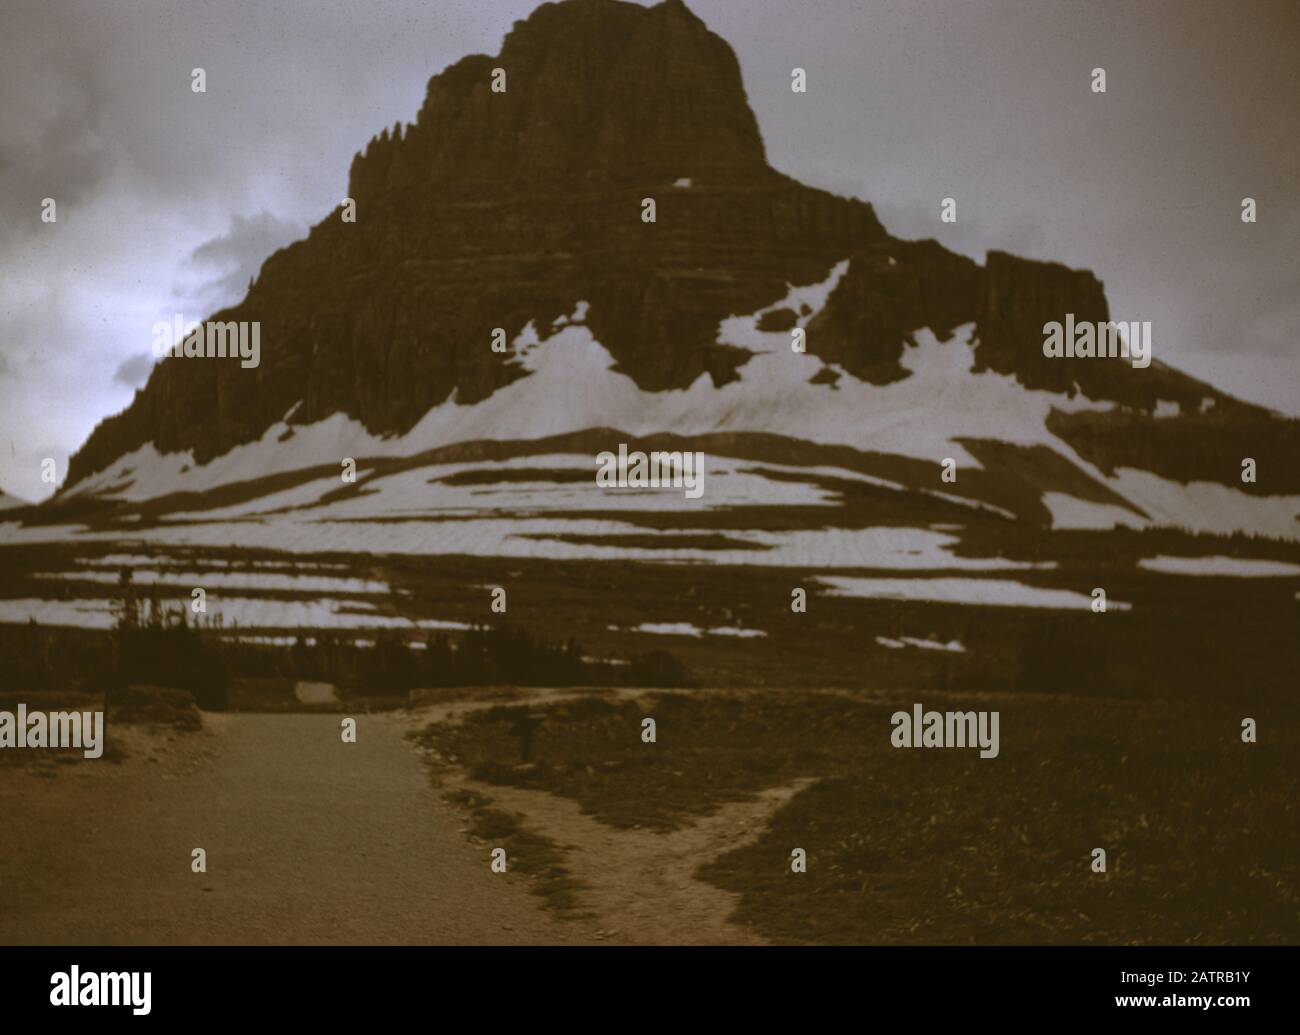 Nakuläres Foto, aufgenommen auf einer analogen 35-mm-Filmtransparenz, die vermutlich tagsüber schneebedeckte Berge abbildet. Zu den erkannten Grenzsteinen/Orten gehört der Glacier National Park. Zu den wichtigsten Themen/Objekten, die erfasst wurden, gehören Berglandformen, Berg, Himmel, Landschaft und Felsen. () Stockfoto